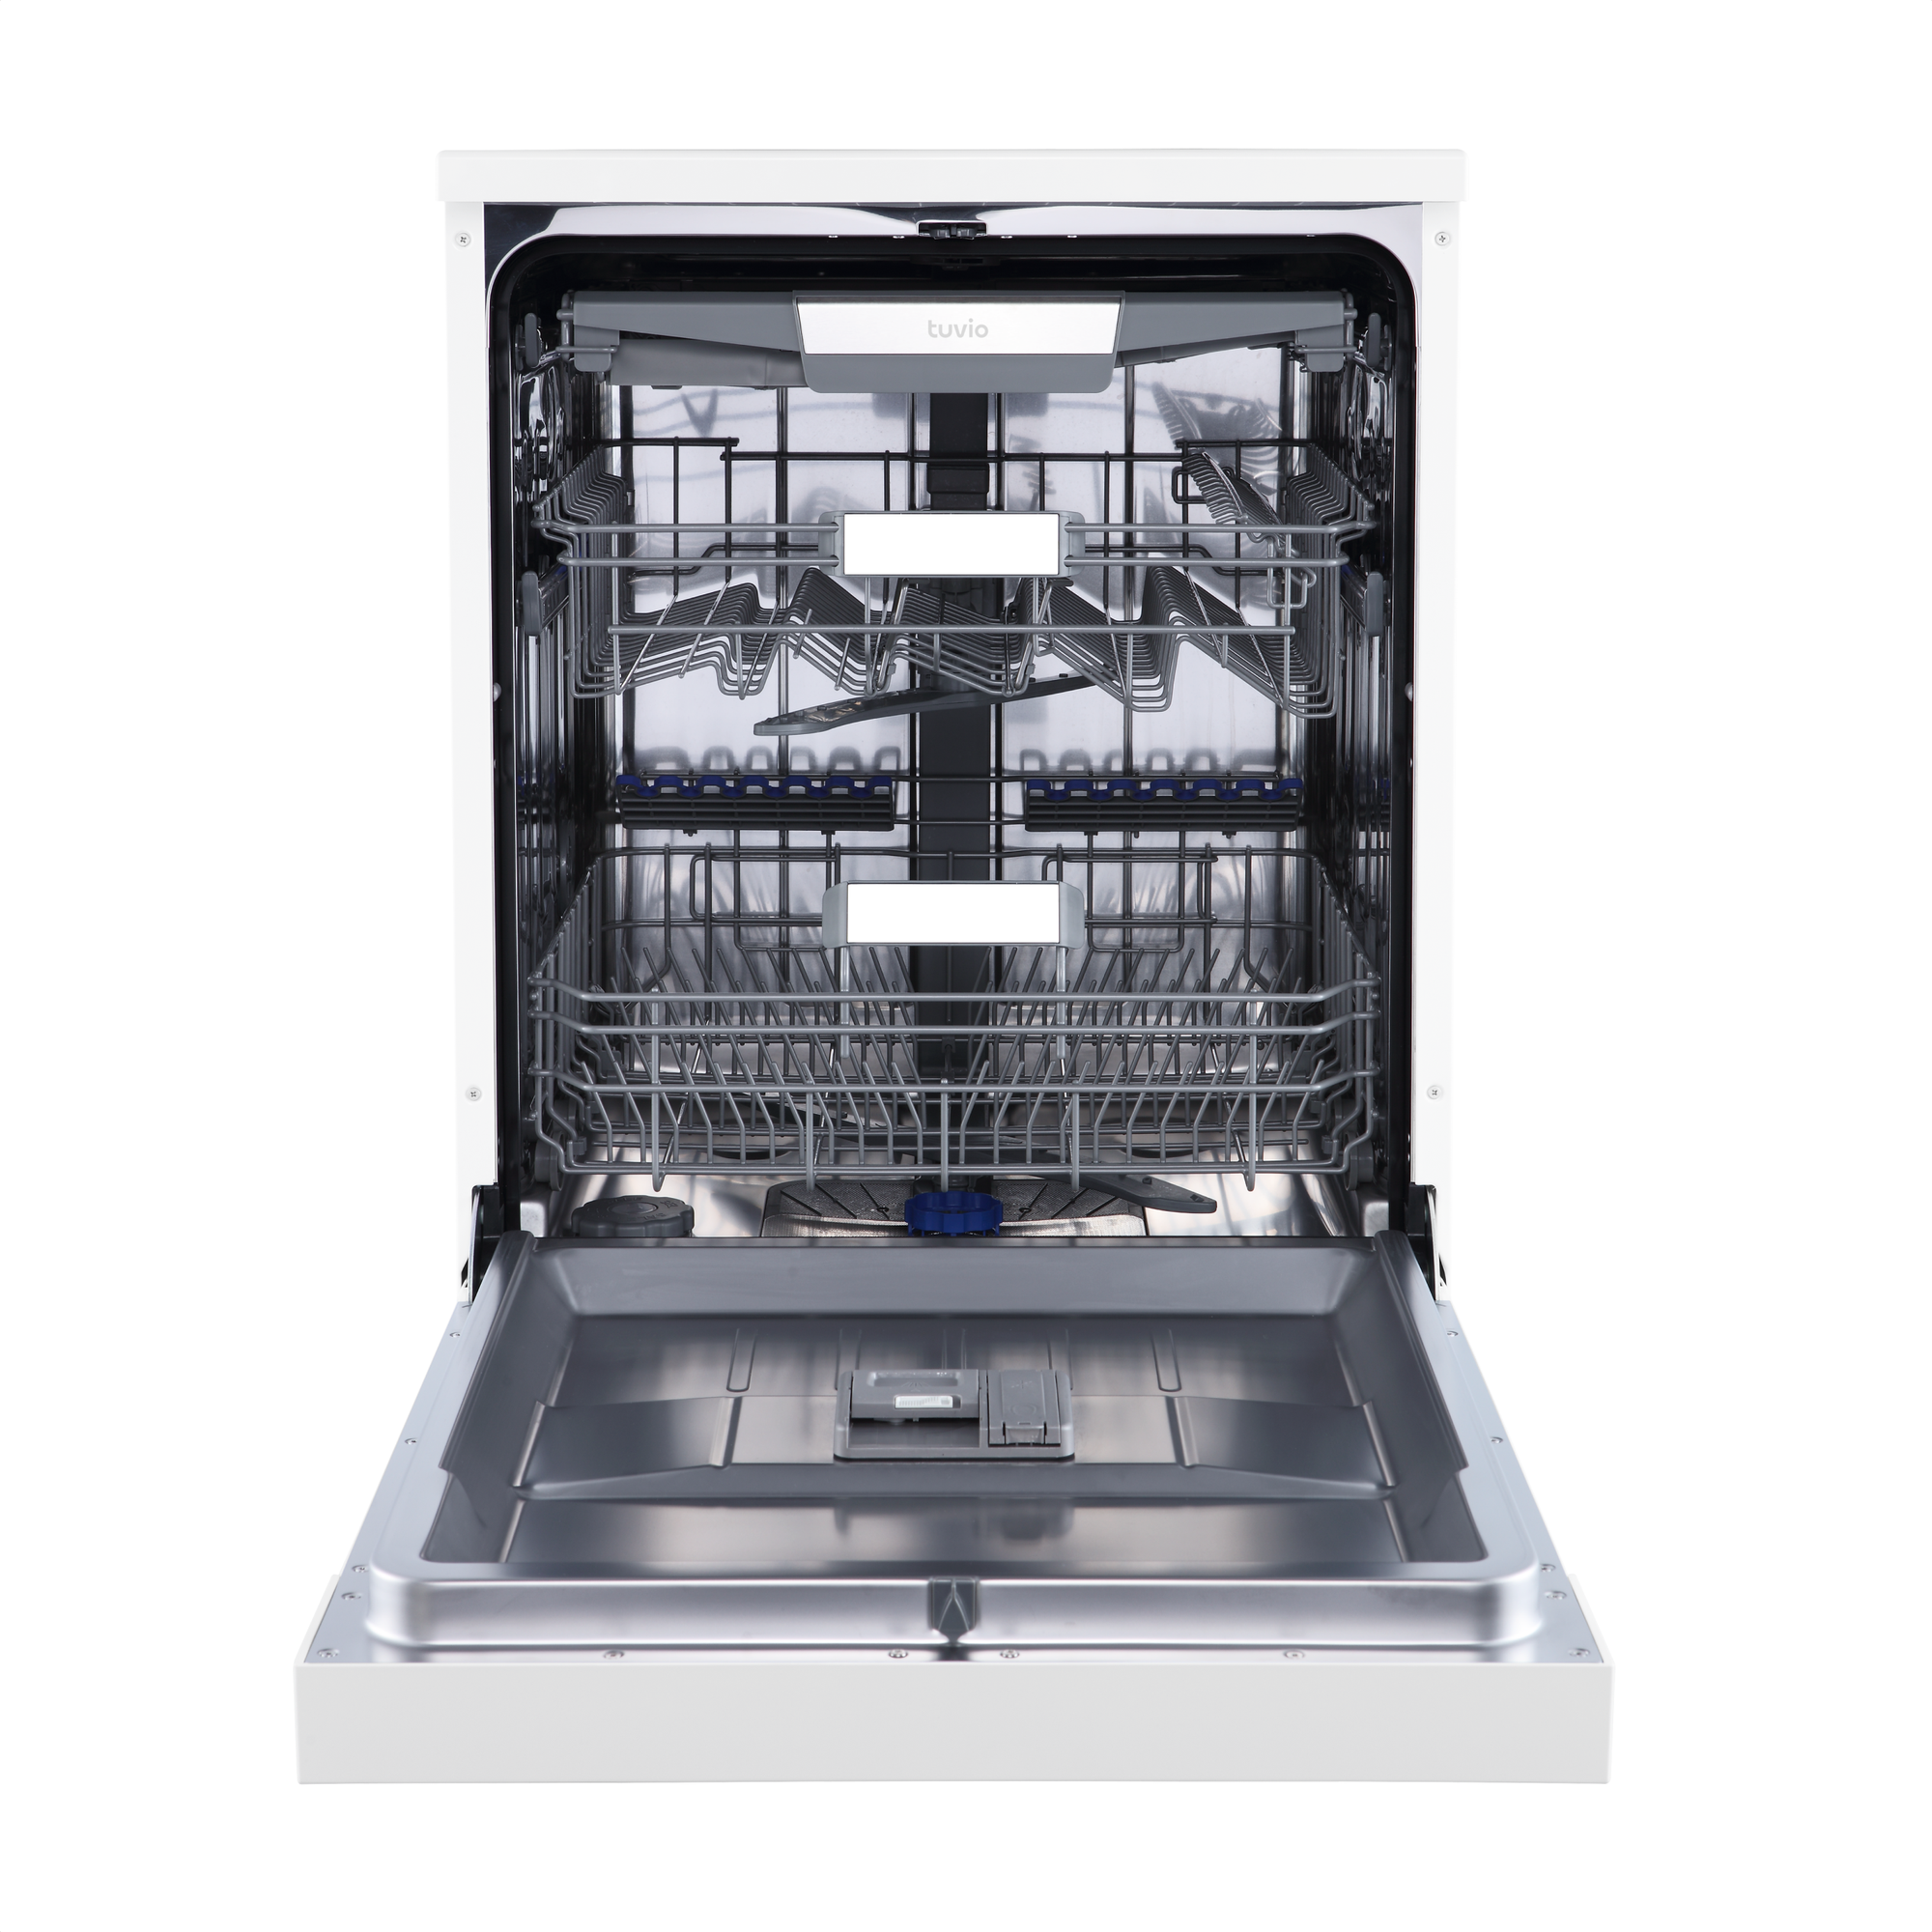 Посудомоечная машина с инвертором и автооткрыванием Tuvio DF63PT8WI1, белый